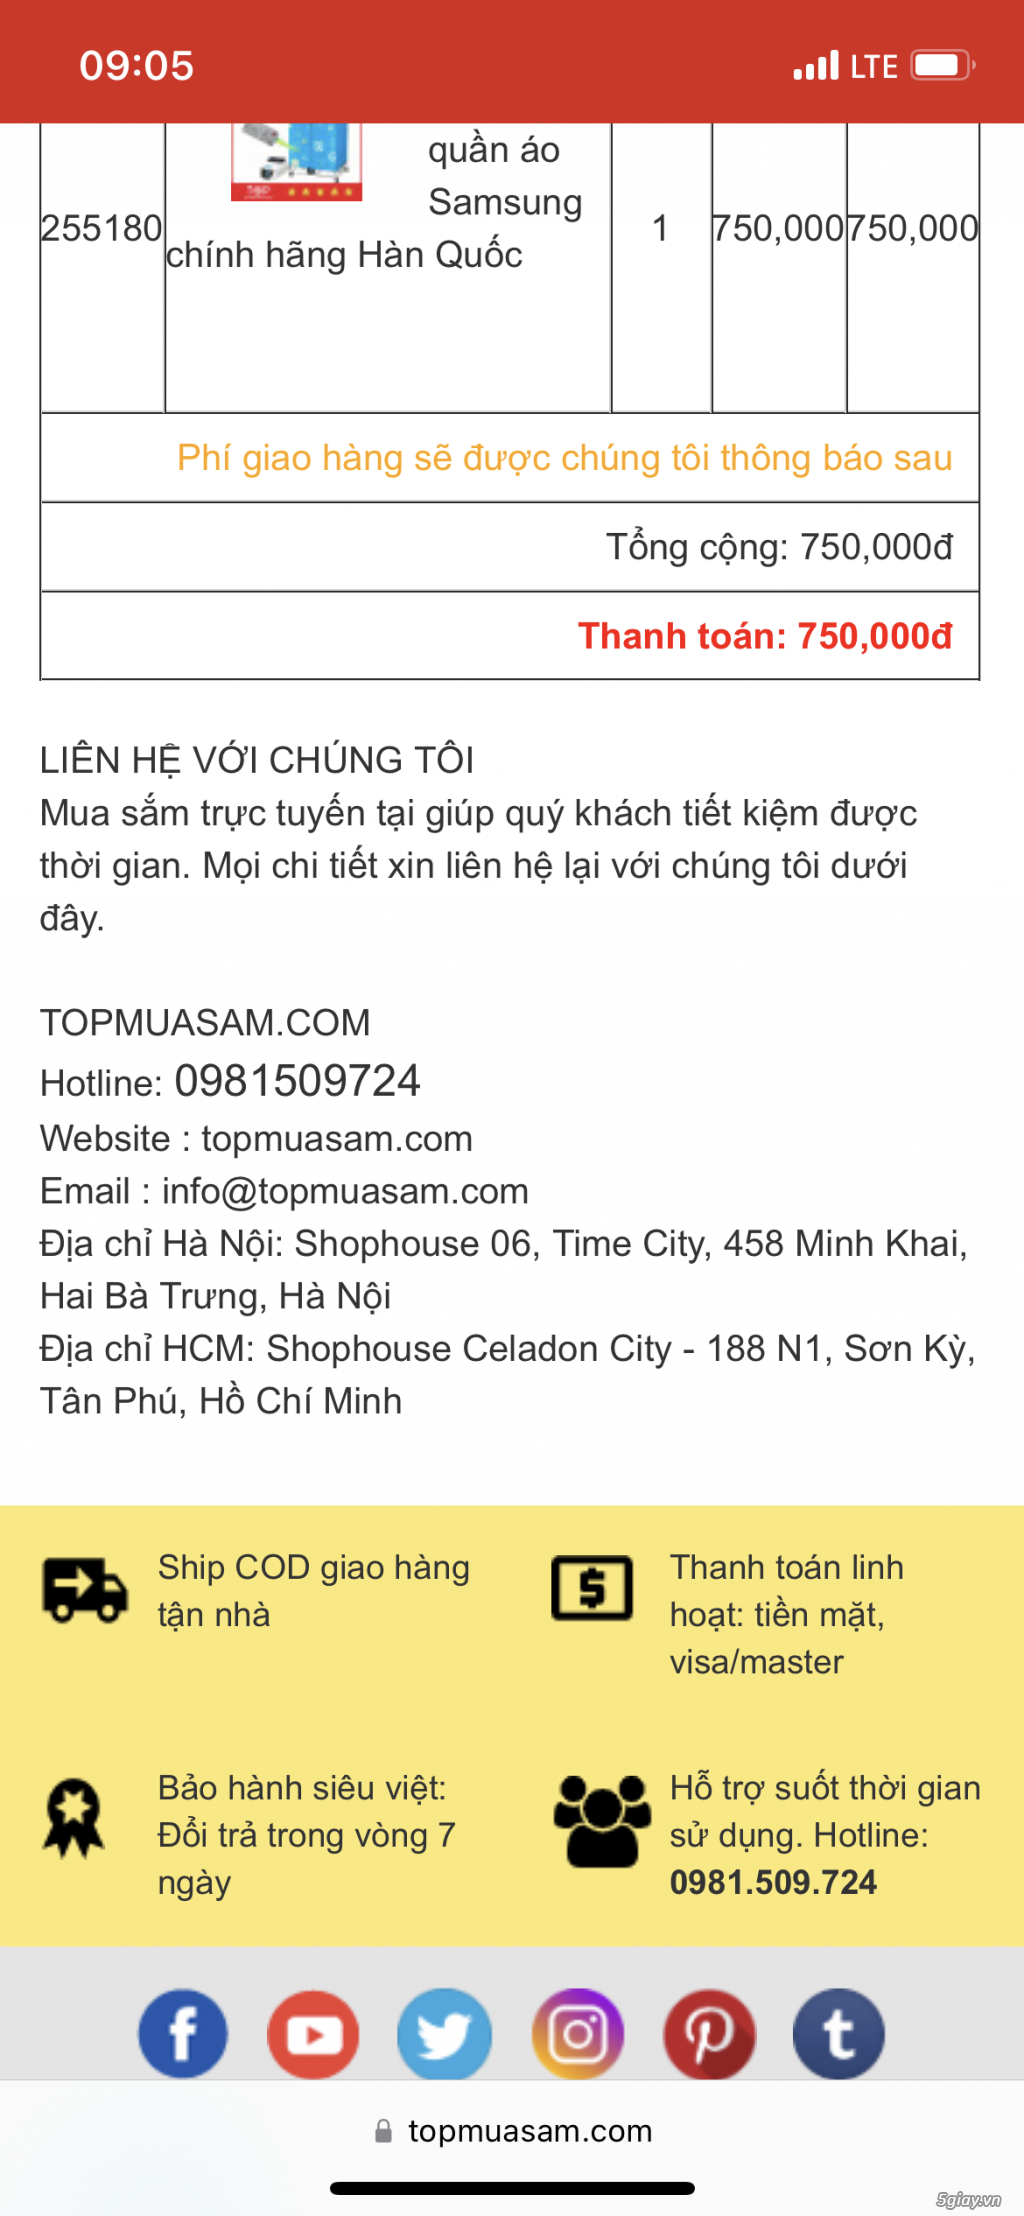 Cảnh báo bán điện thoại Nokia 8110 giả - của topmuasam.com - 1